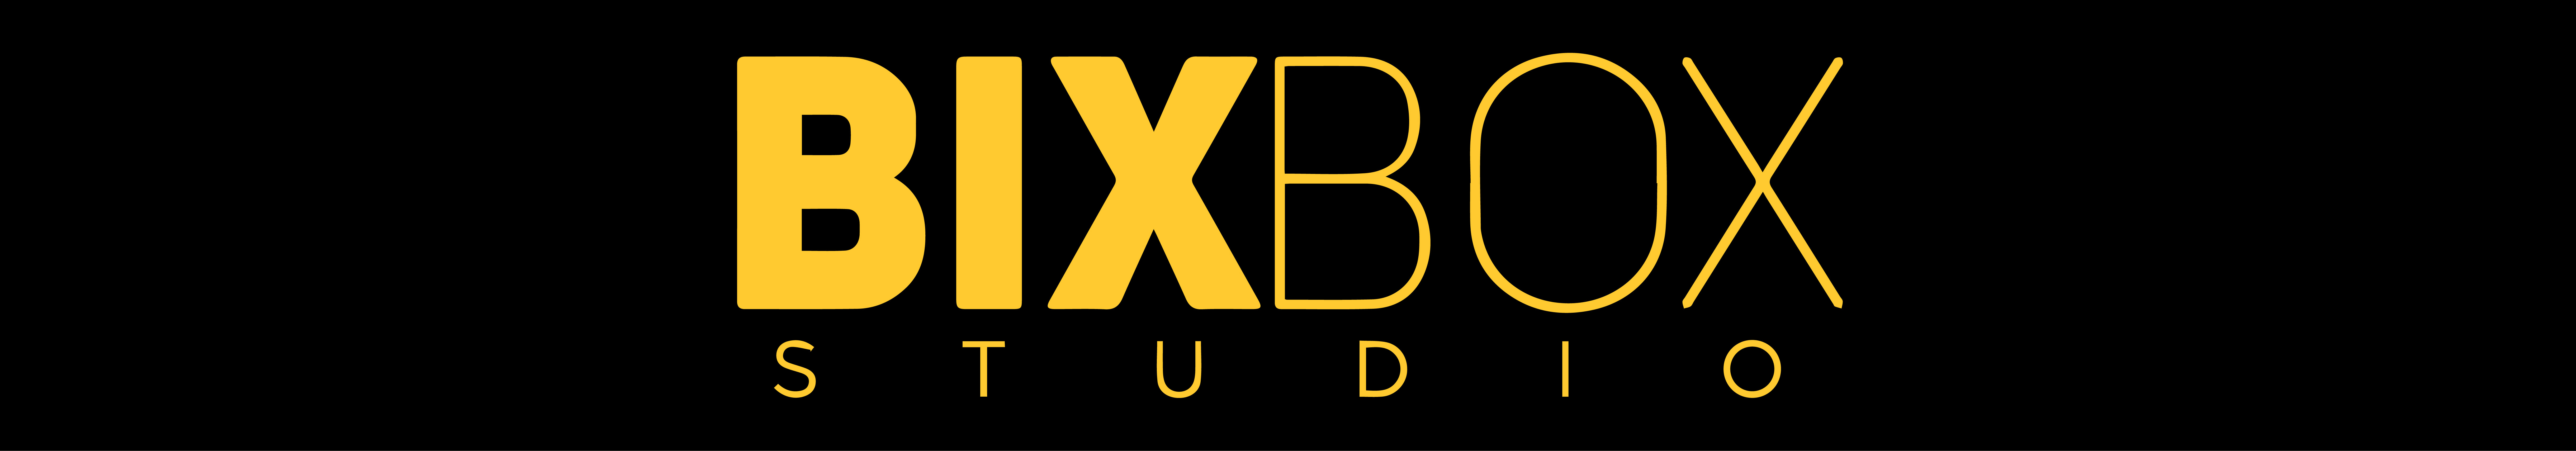 Bixbox Studio's profile banner